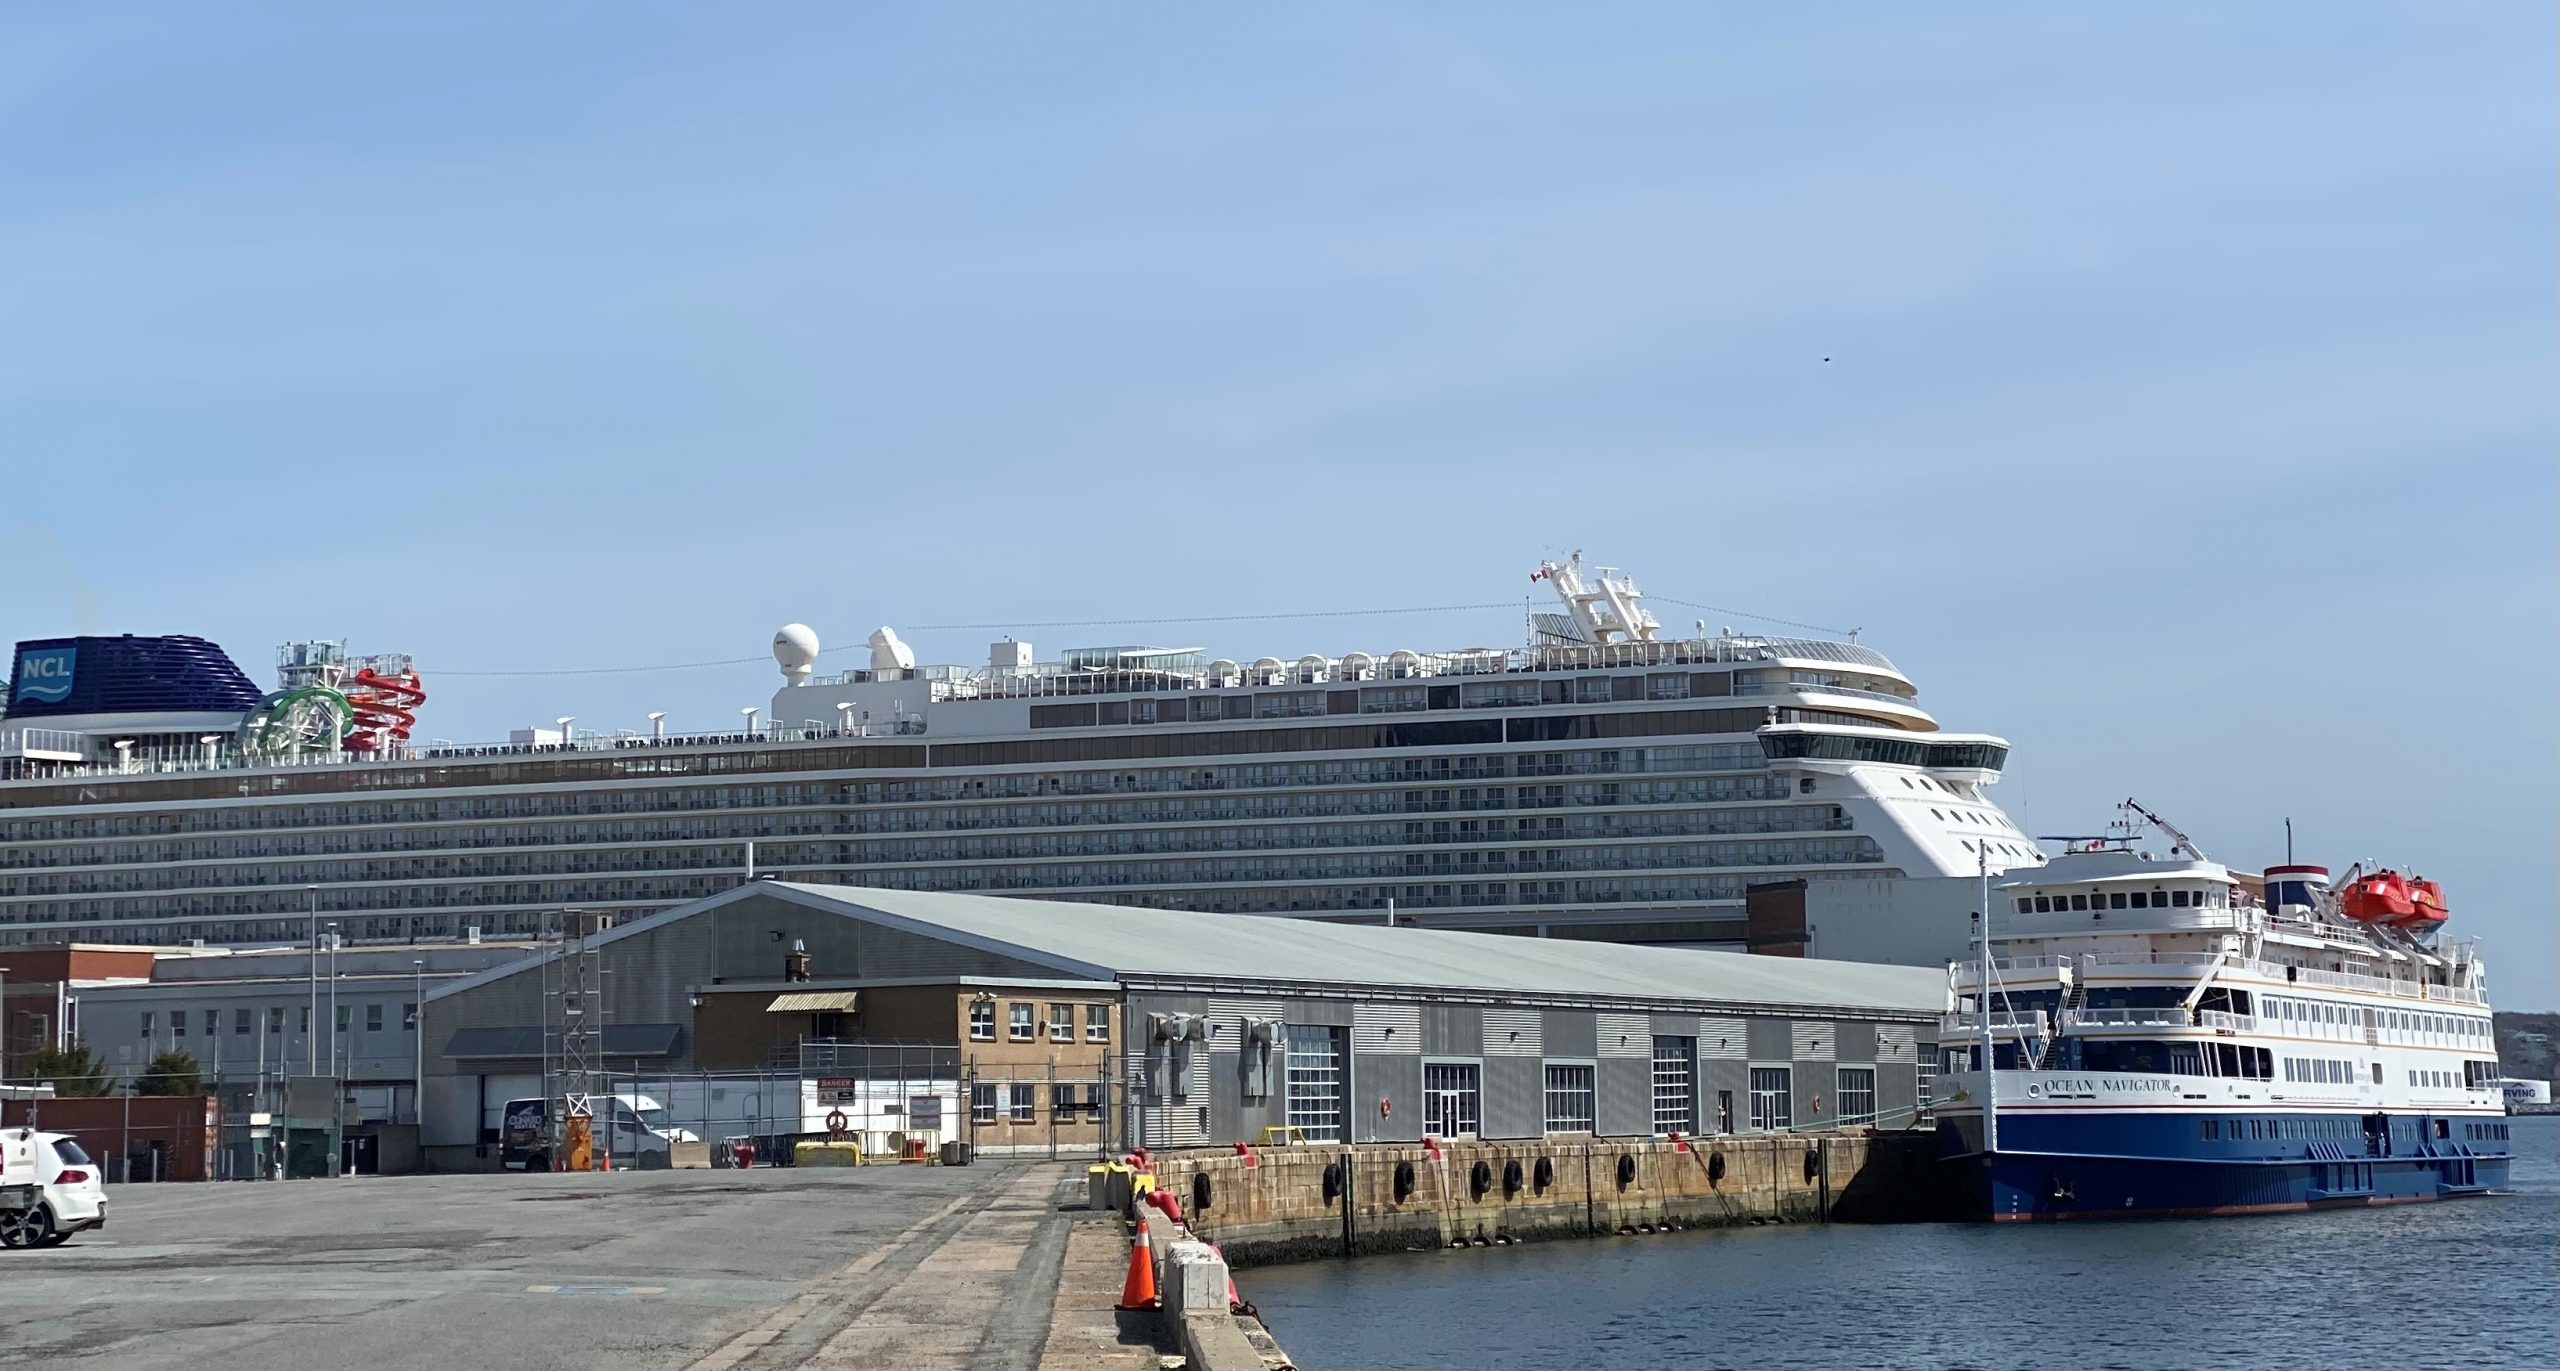 Cruise Ships Return to Halifax Halifax Shipping News.ca